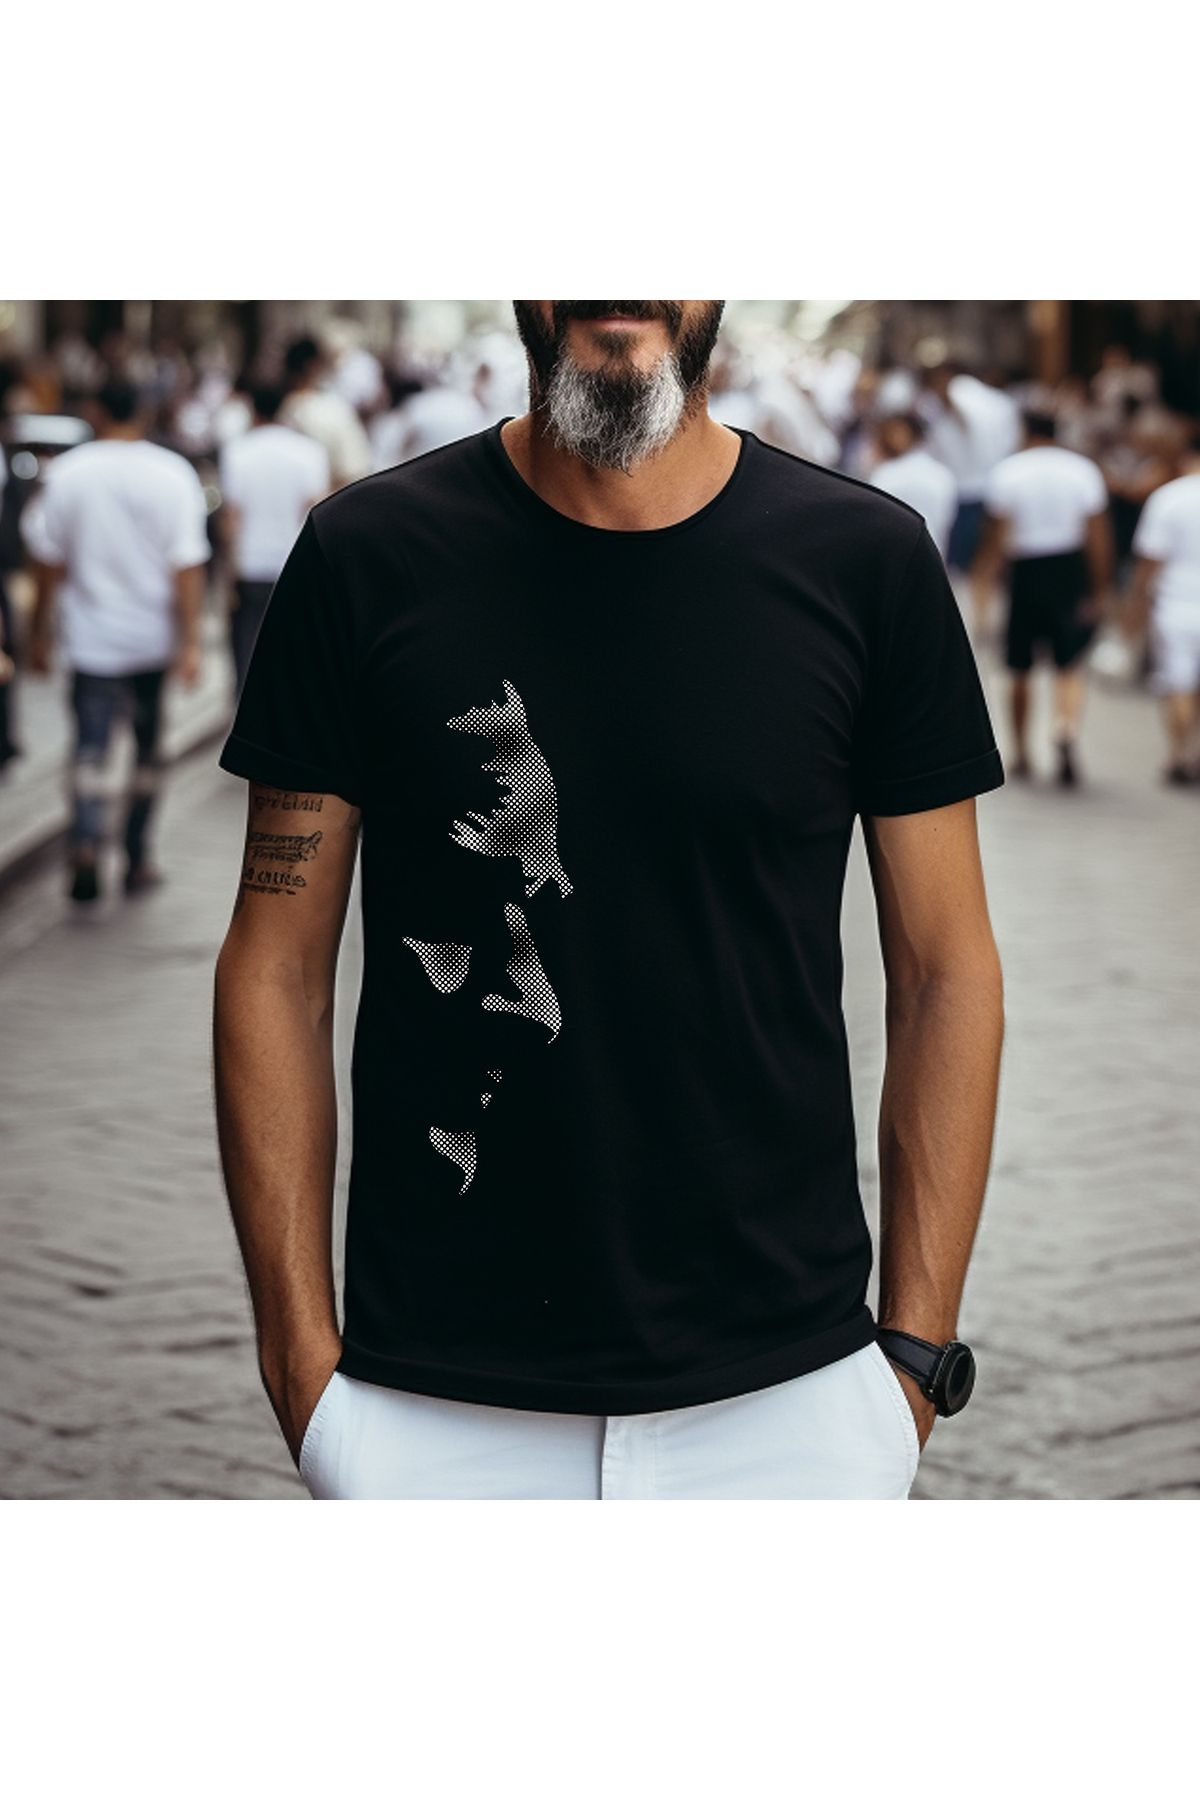 Crea Eymer Wear Noktasal Atatürk Silüetli Özel Tasarım Baskılı Bisiklet Yaka 100% Pamuklu Tişört Siyah